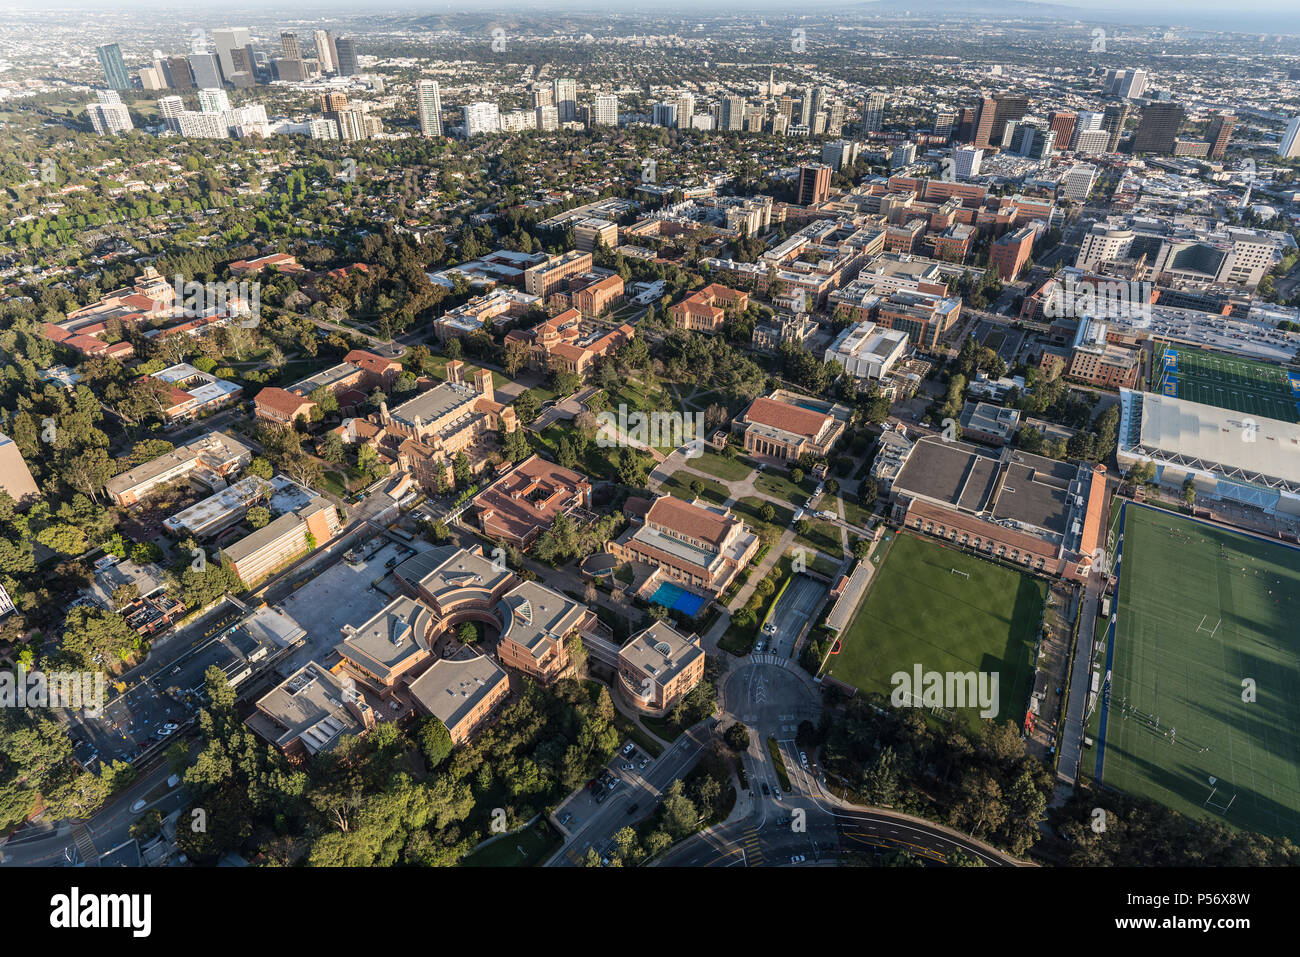 Los Angeles, Californie, USA - 18 Avril 2018 : Vue aérienne du campus de l'UCLA avec Century City et Westwood en arrière-plan. Banque D'Images